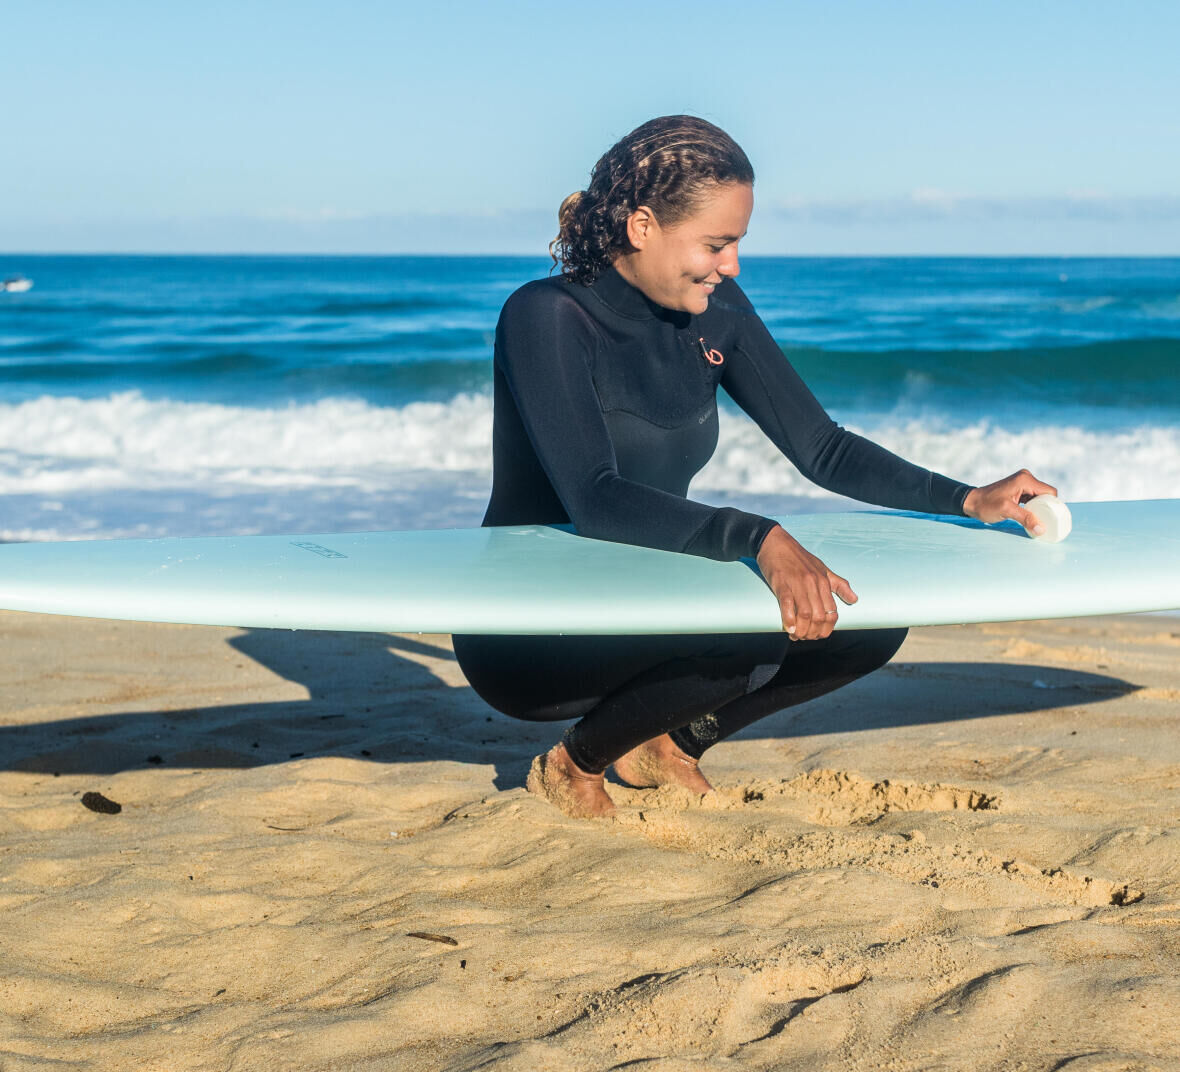 SURF entretien